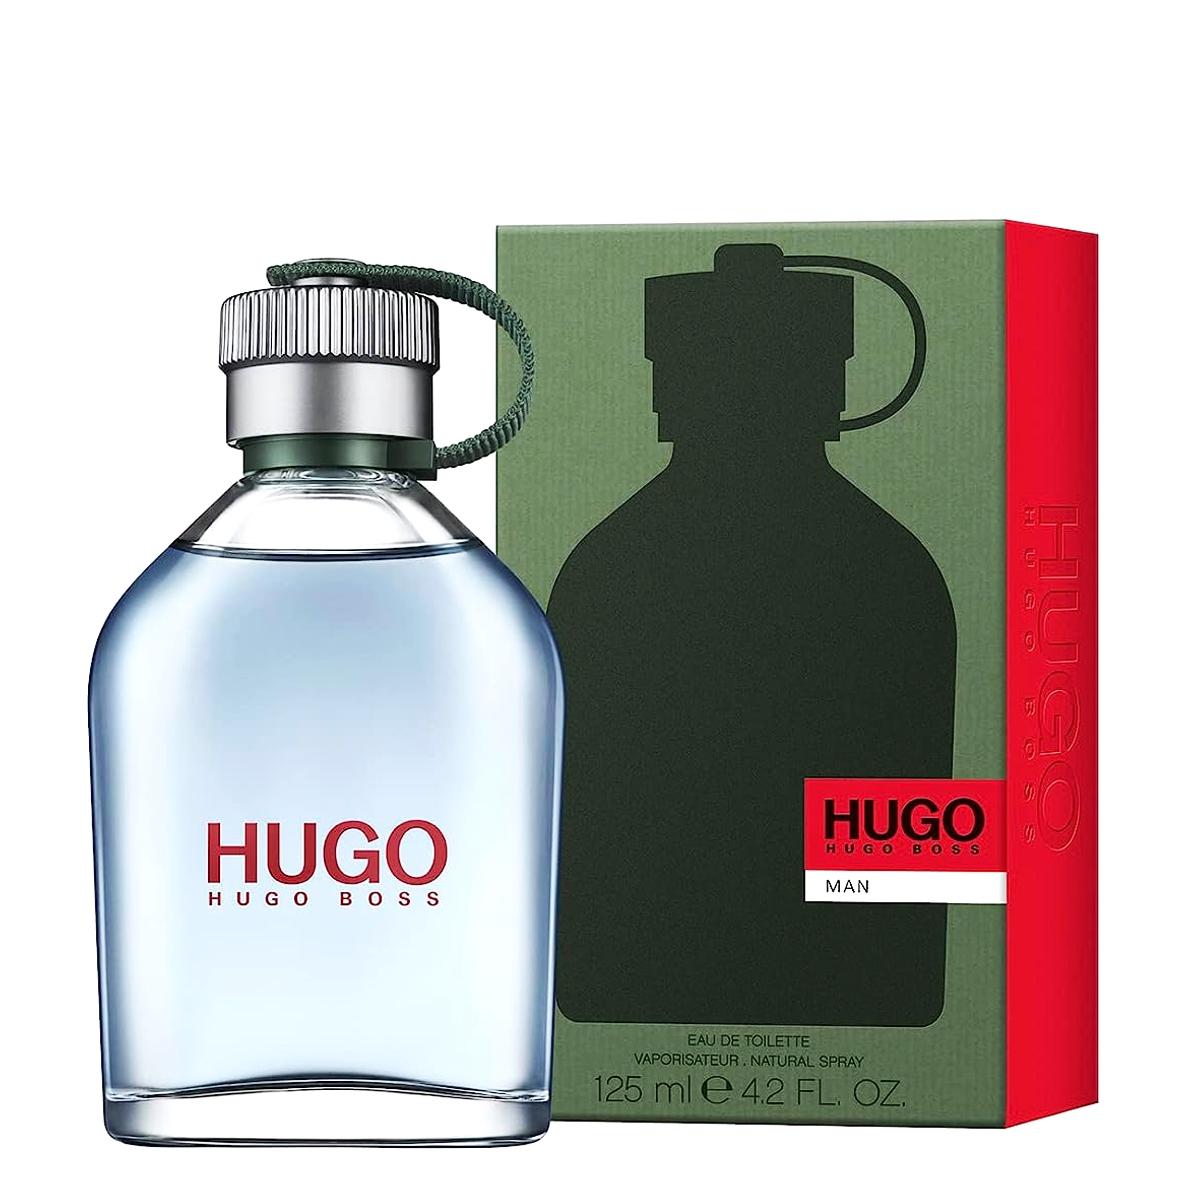 Selected image for HUGO BOSS Muška toaletna voda Hugo Man V125ml